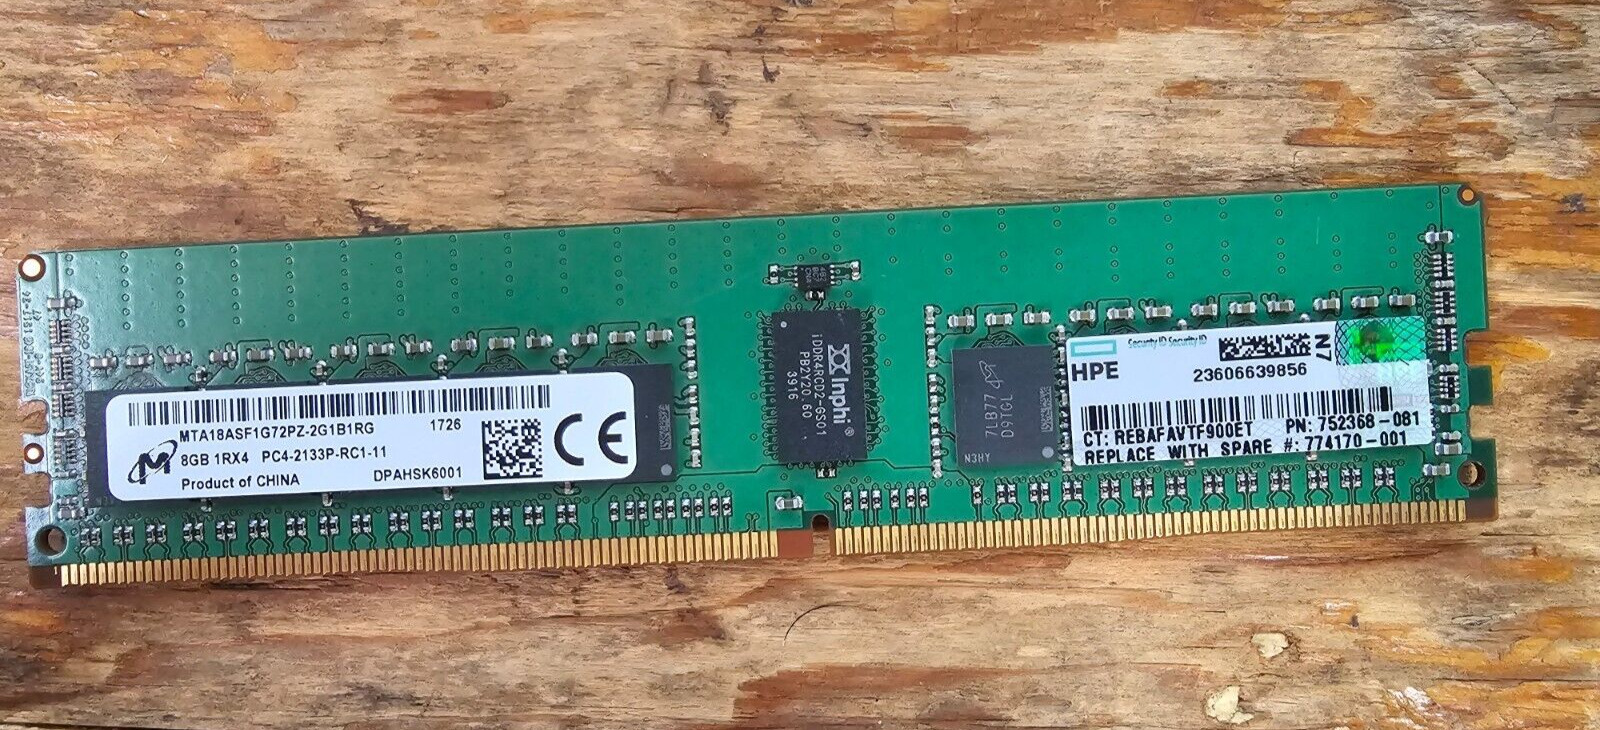 Micron 8GB 1Rx4 PC4 (DDR4) 2133P-RC1-11 MTA18ASF1G72PZ-2G1B1RG 1726